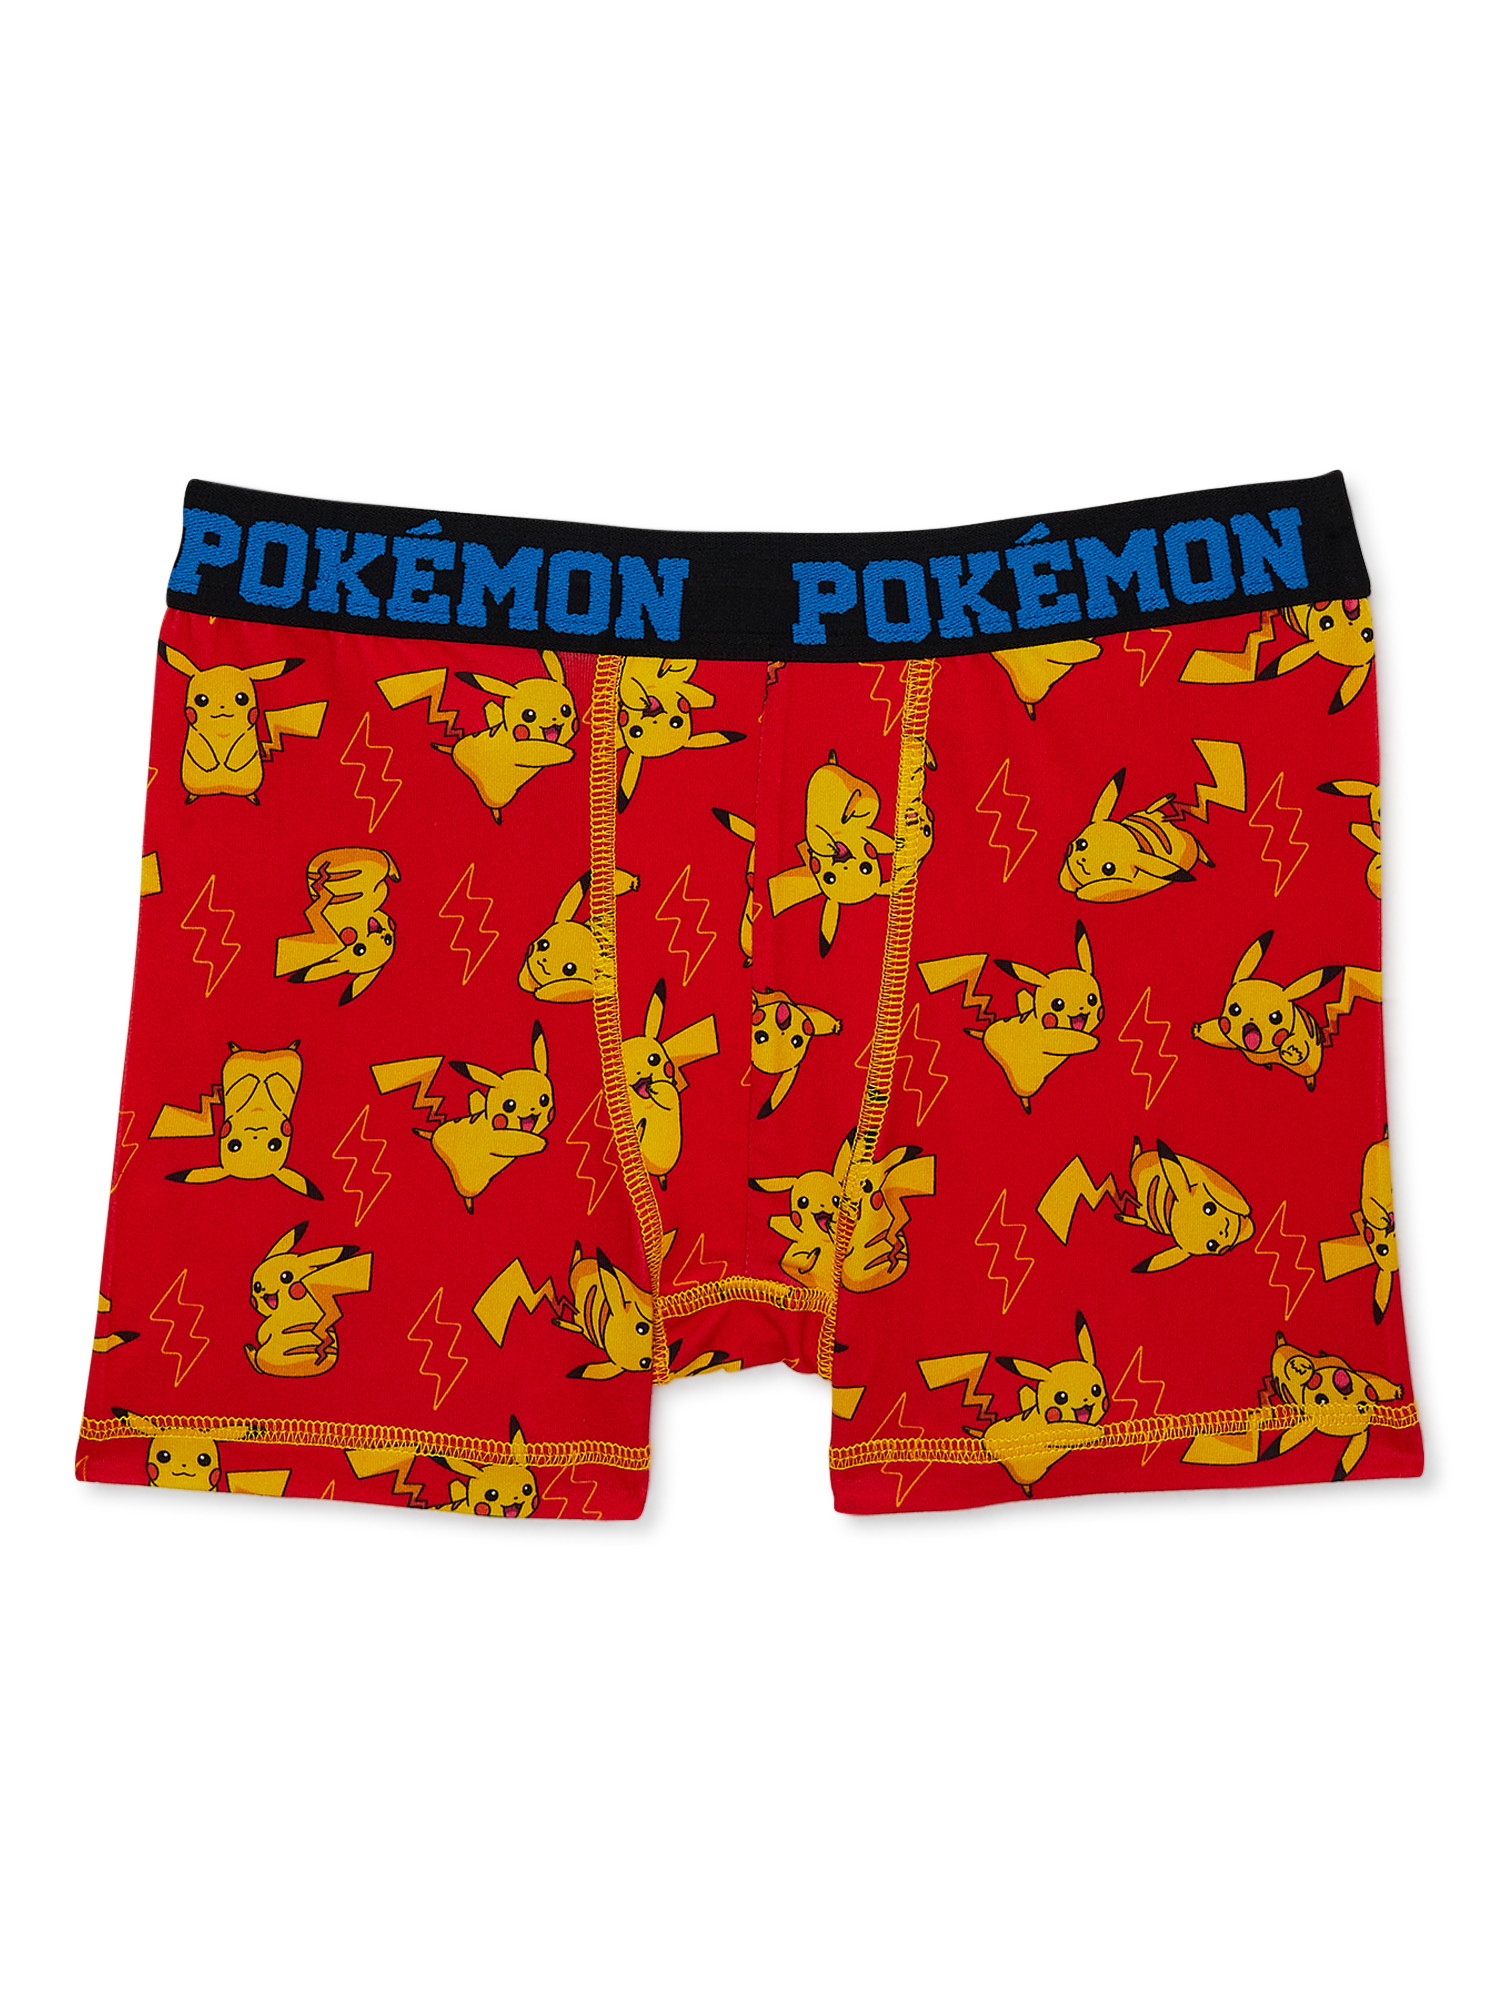 Pokémon Boy's Boxer Briefs Underwear, 4-pack, Sizes 4-14 - image 4 of 7